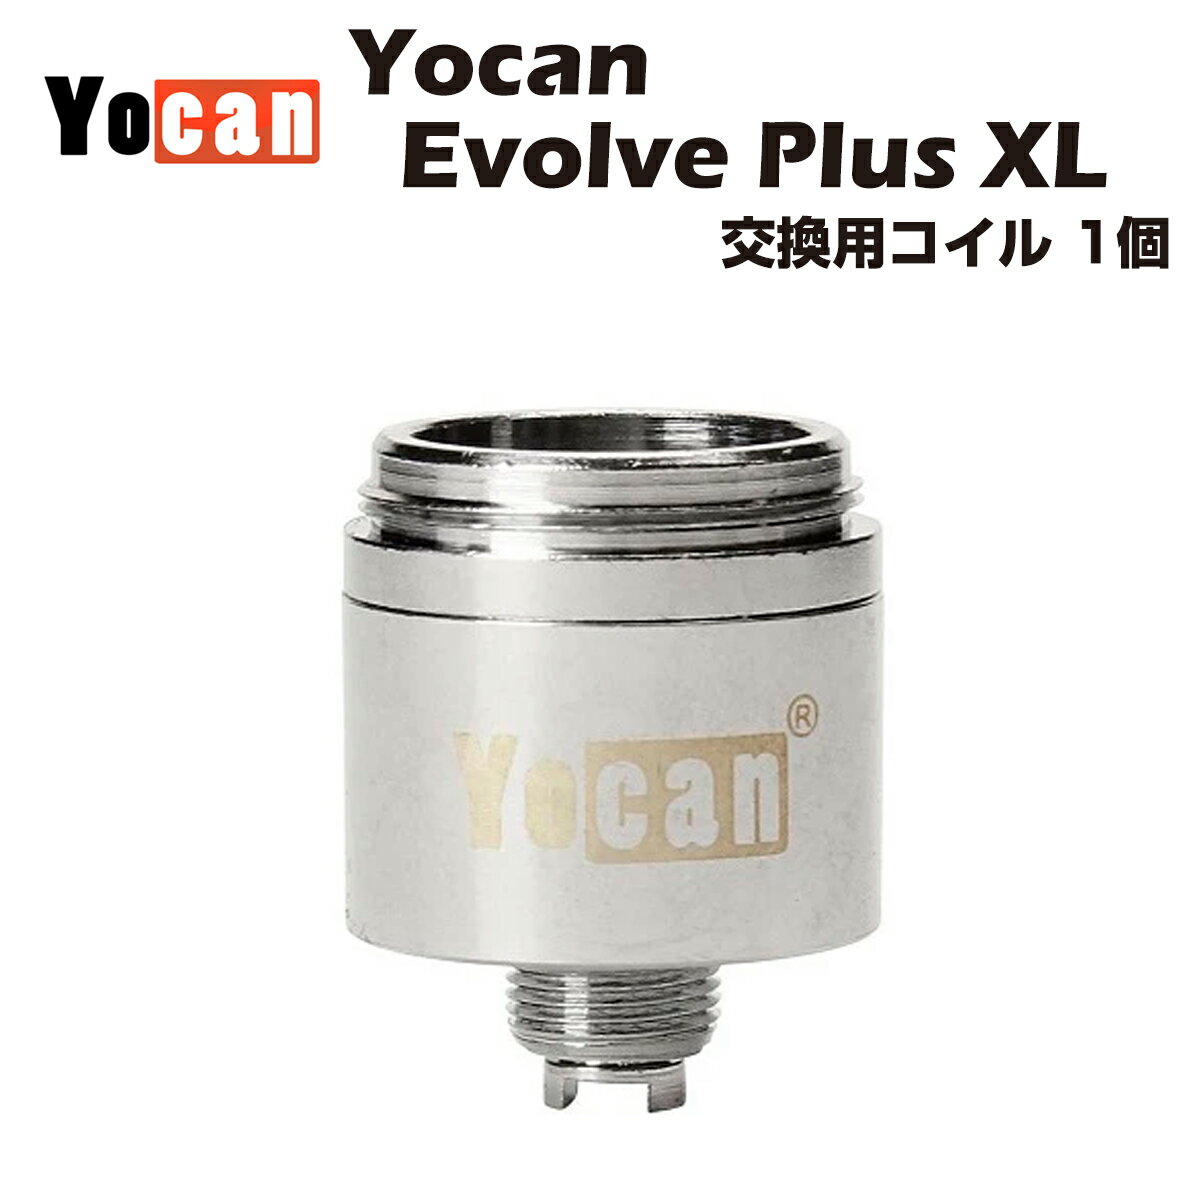 Yocan Evolve Plus XL 交換用コイル 1個 ワックス専用ヴェポライザー ユーキャン エボルブ coil クリスタル パウダー 電子タバコ 電子タバコ ベイプ vape